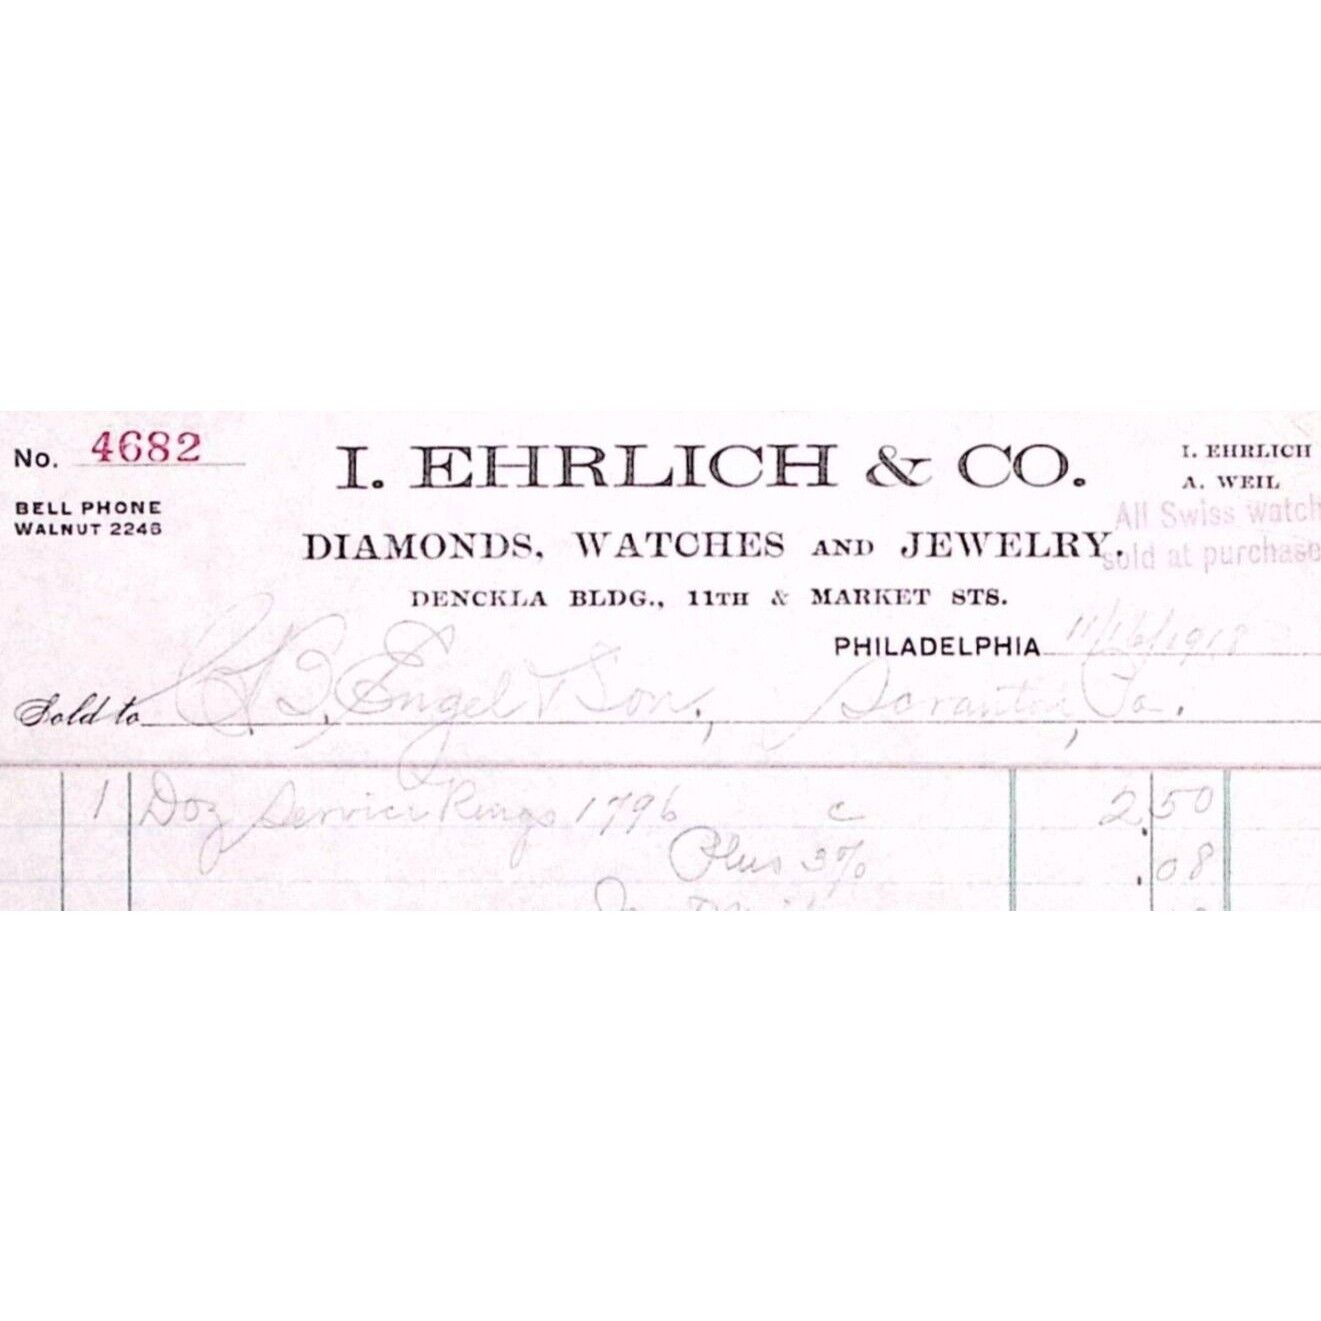 1918 PHILADELPHIA I EHRLICH & CO DIAMONDS WATCHES JEWELRY BILLHEAD INVOICE  Z172